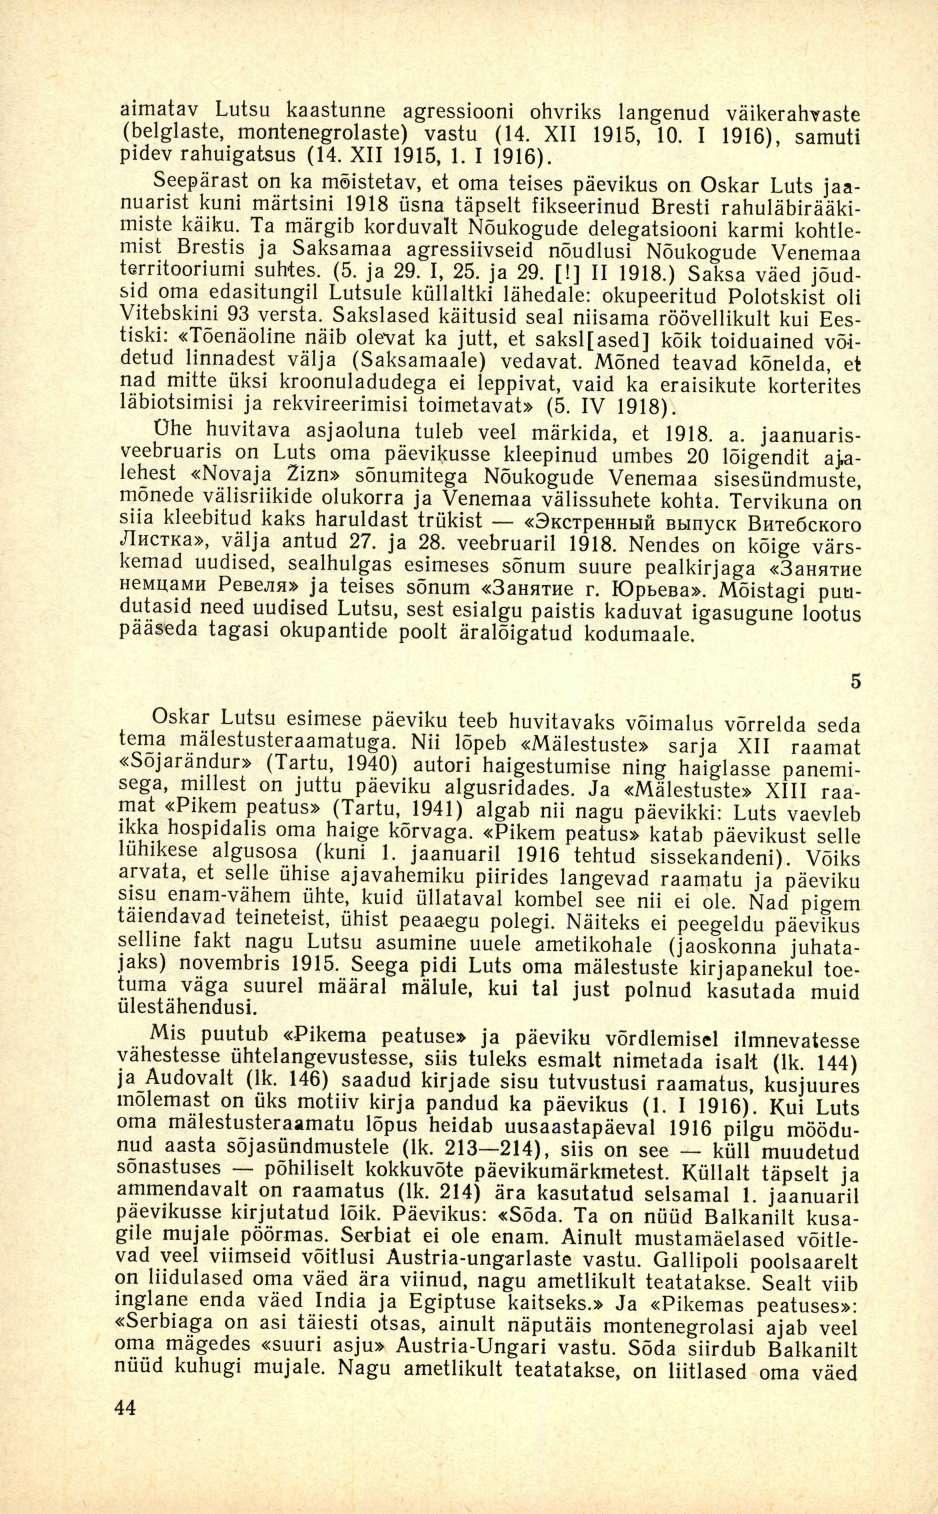 aimatav Lutsu kaastunne agressiooni ohvriks langenud väikerahvaste (belglaste, montenegrolaste) vastu (14. XII 1915, 10. I 1916),